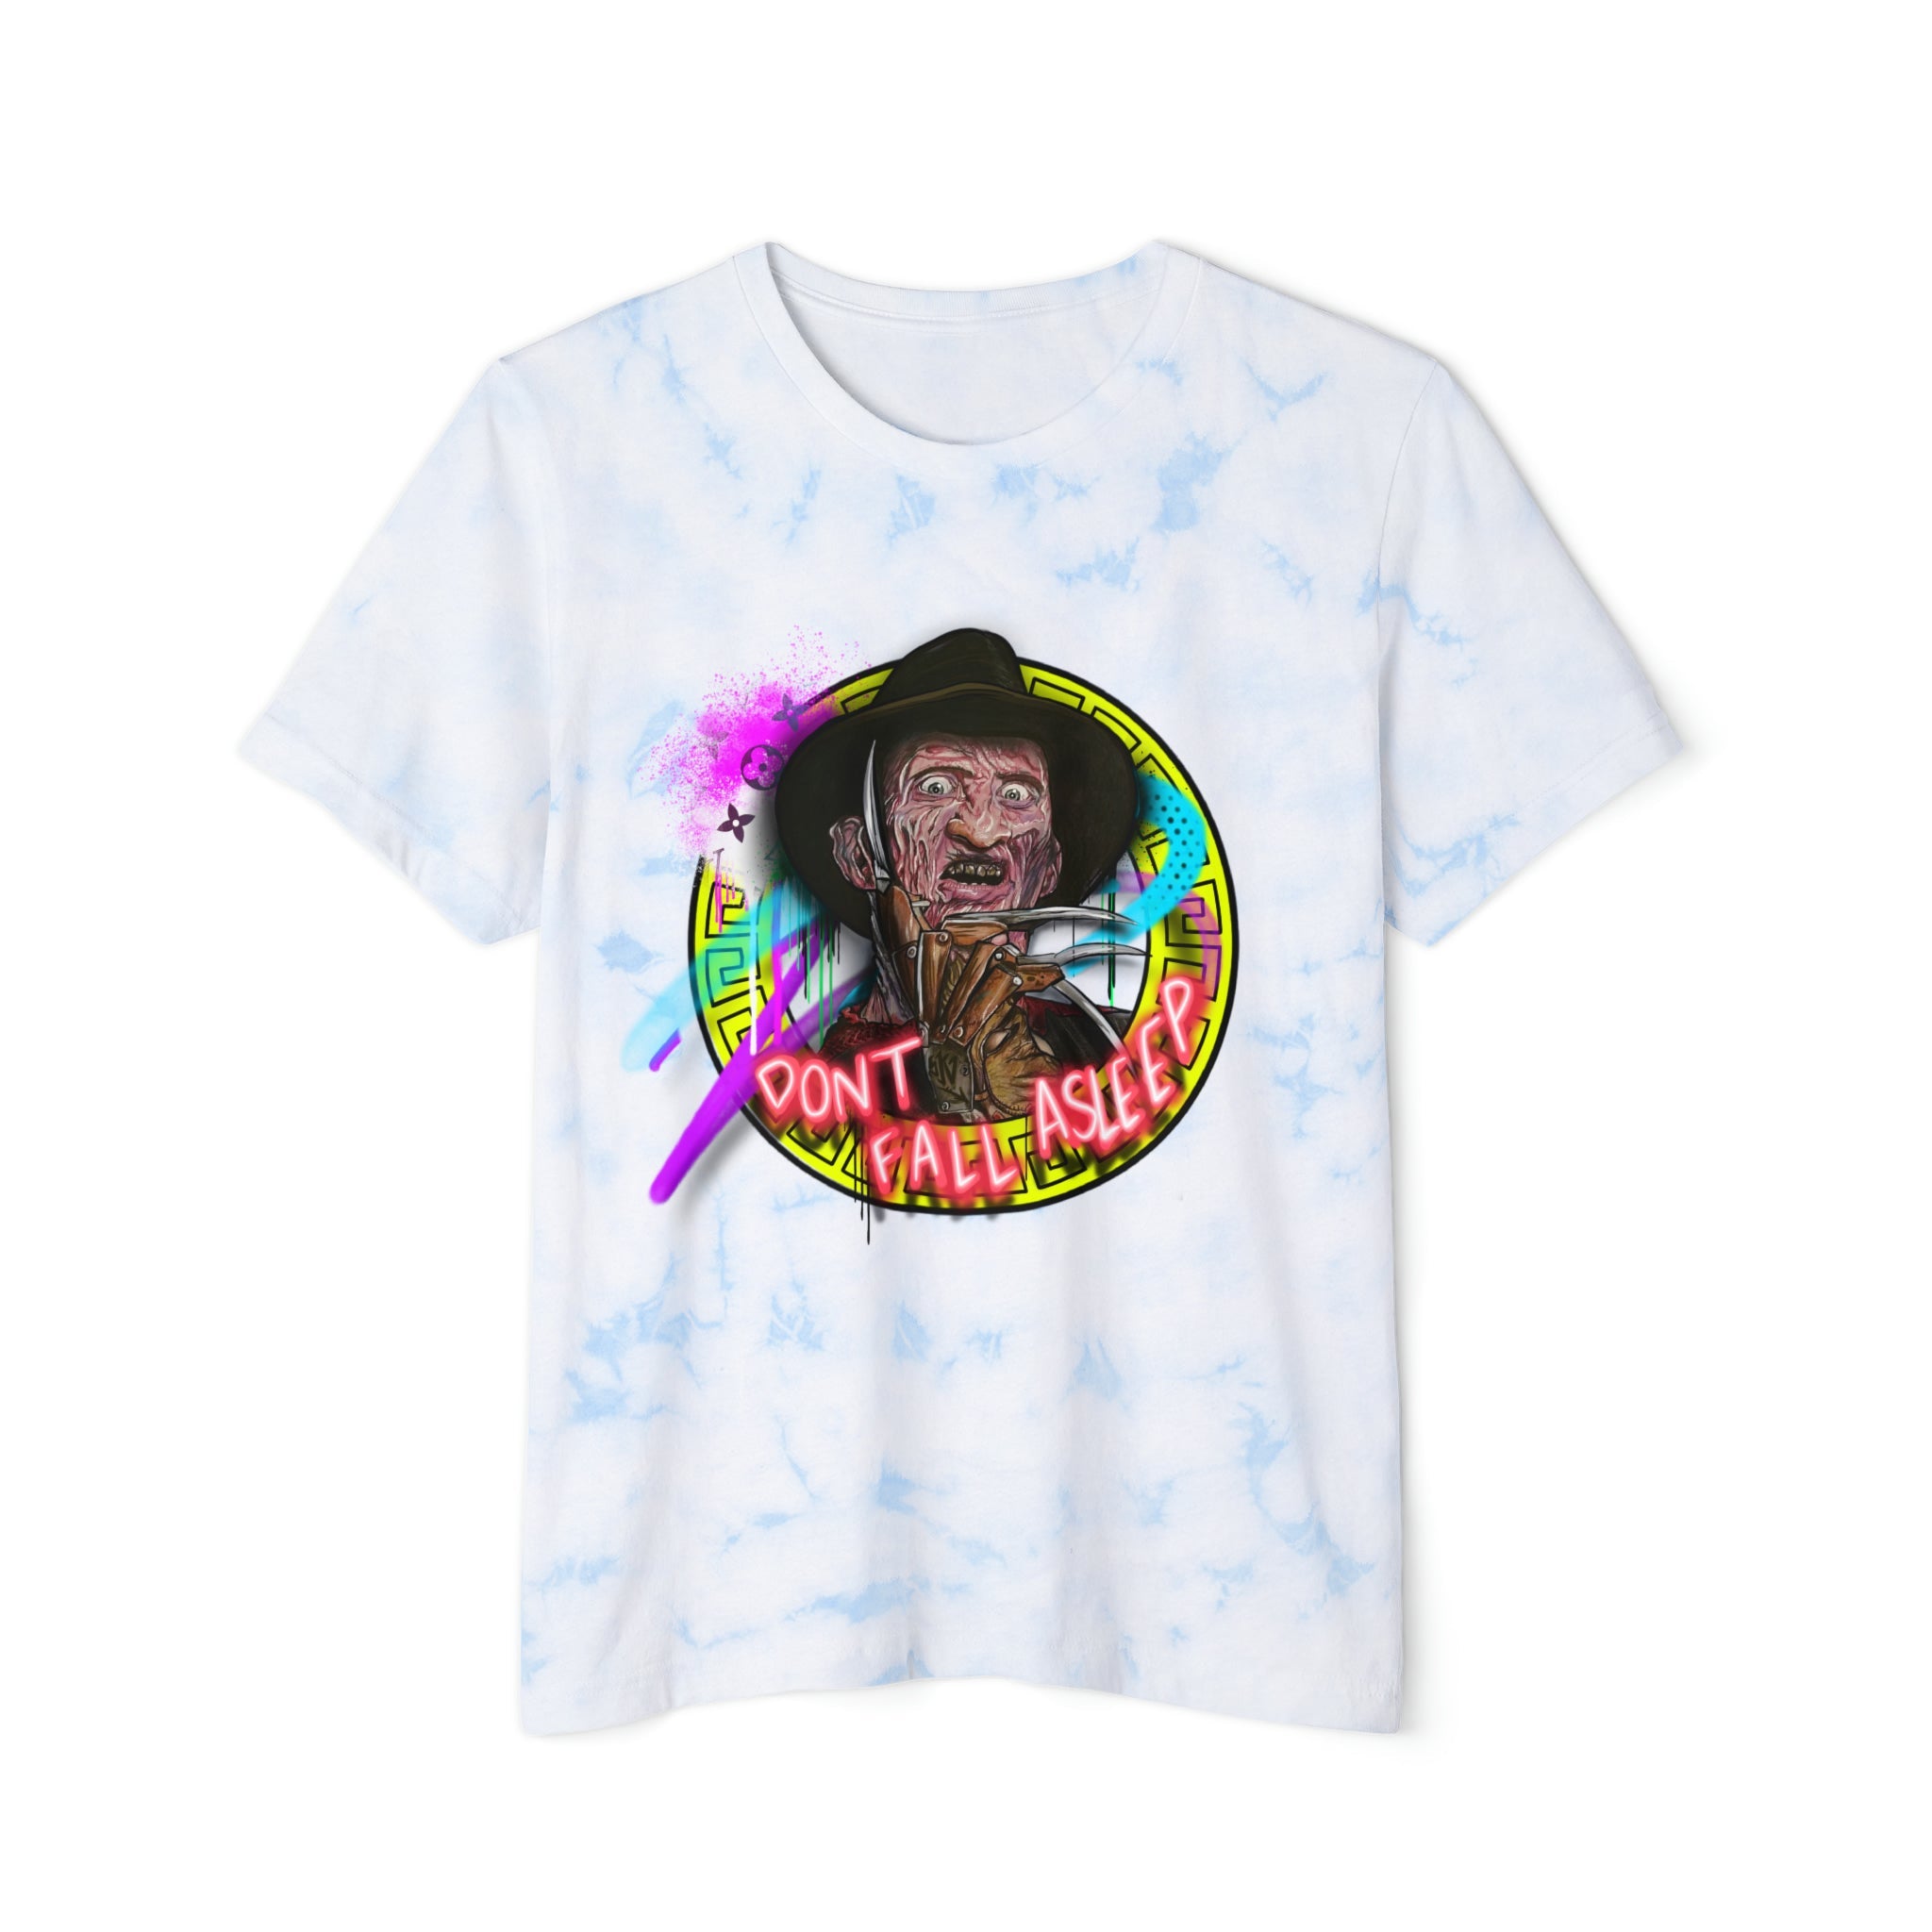 Unisex Freddy x SK Tie-Dyed T-Shirt - Sean Keith Art